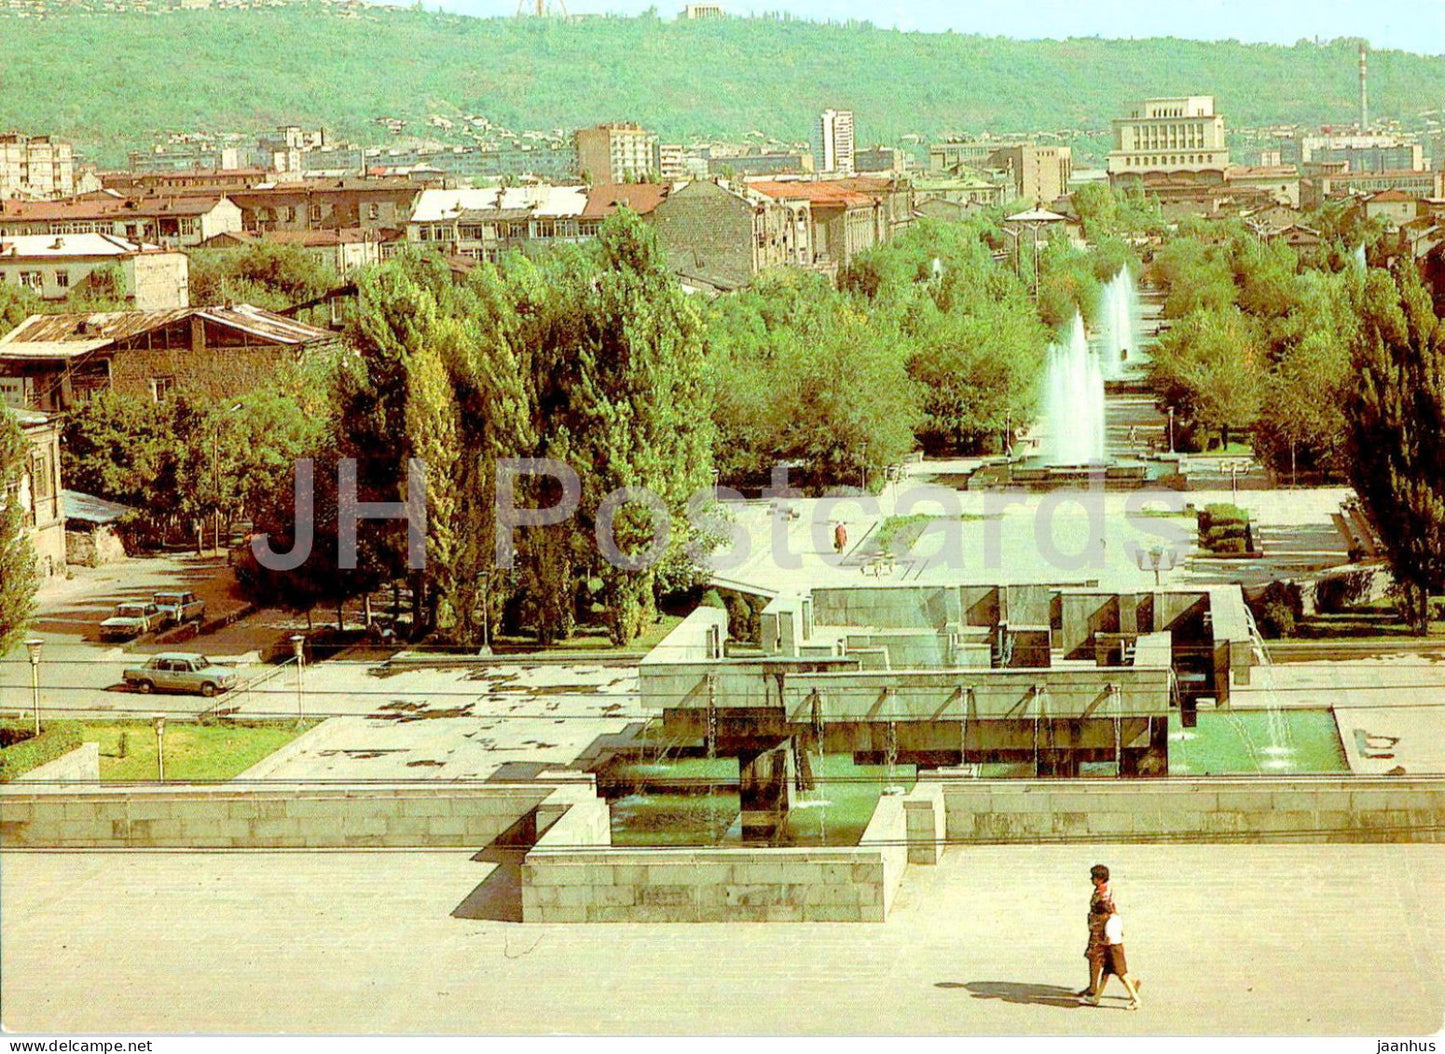 Yerevan - Main prospekt - postal stationery - 1985 - Armenia USSR - unused